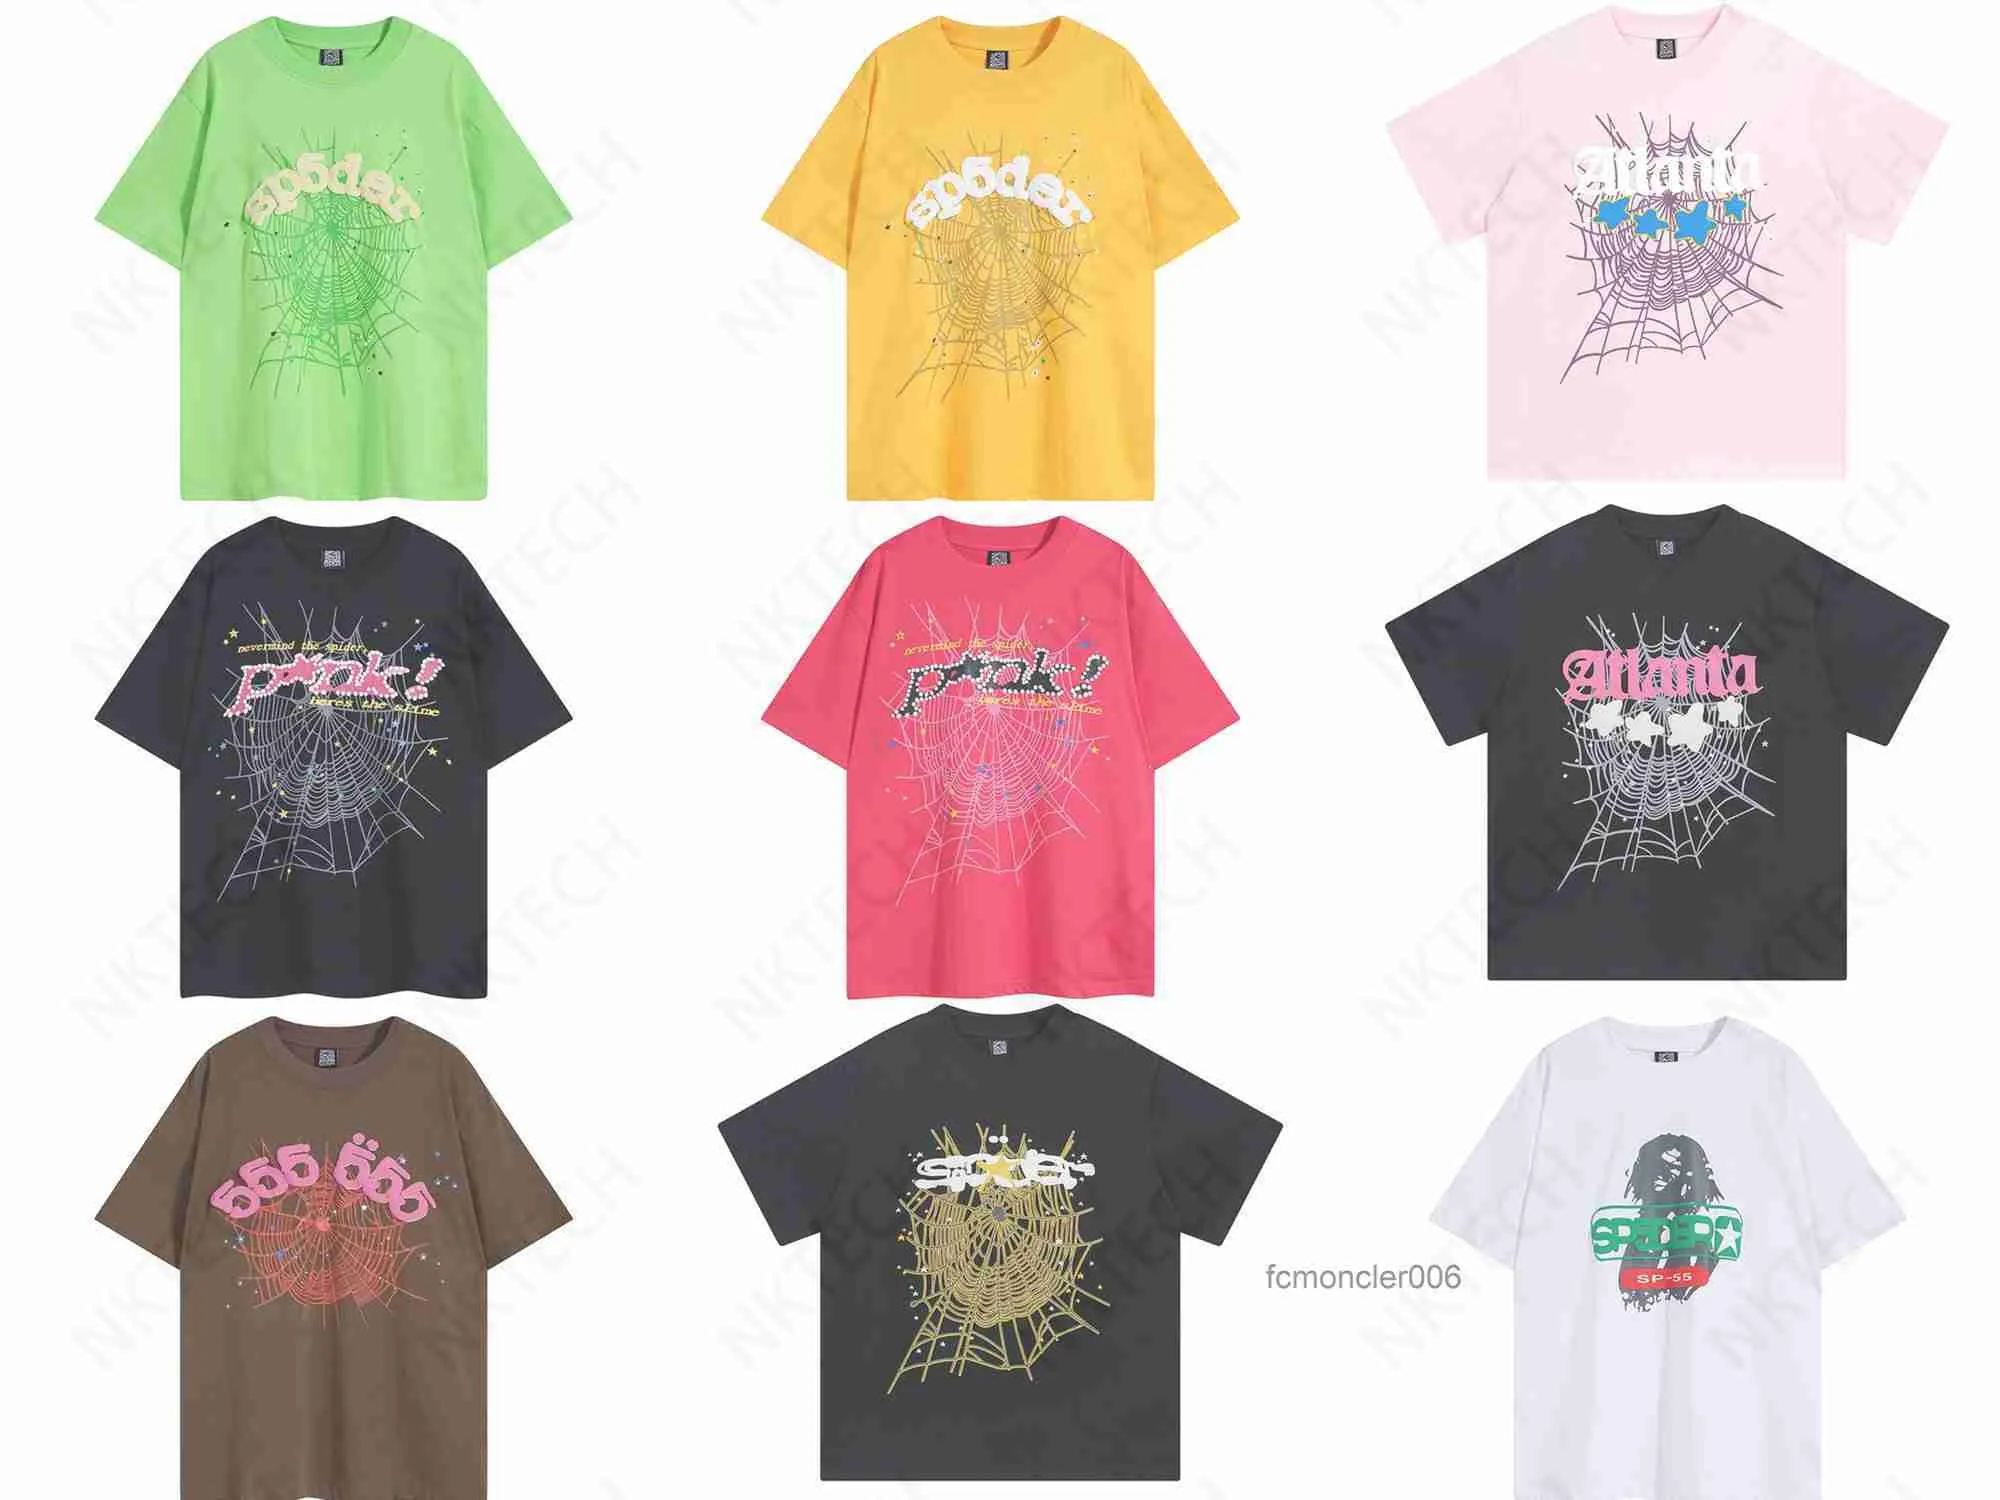 Мужская дизайнерская футболка Pink Young Thug Sp5der 555555 и женская футболка премиум-класса с принтом «Паутина» Fashion 7MSM 7MSM 7MSM